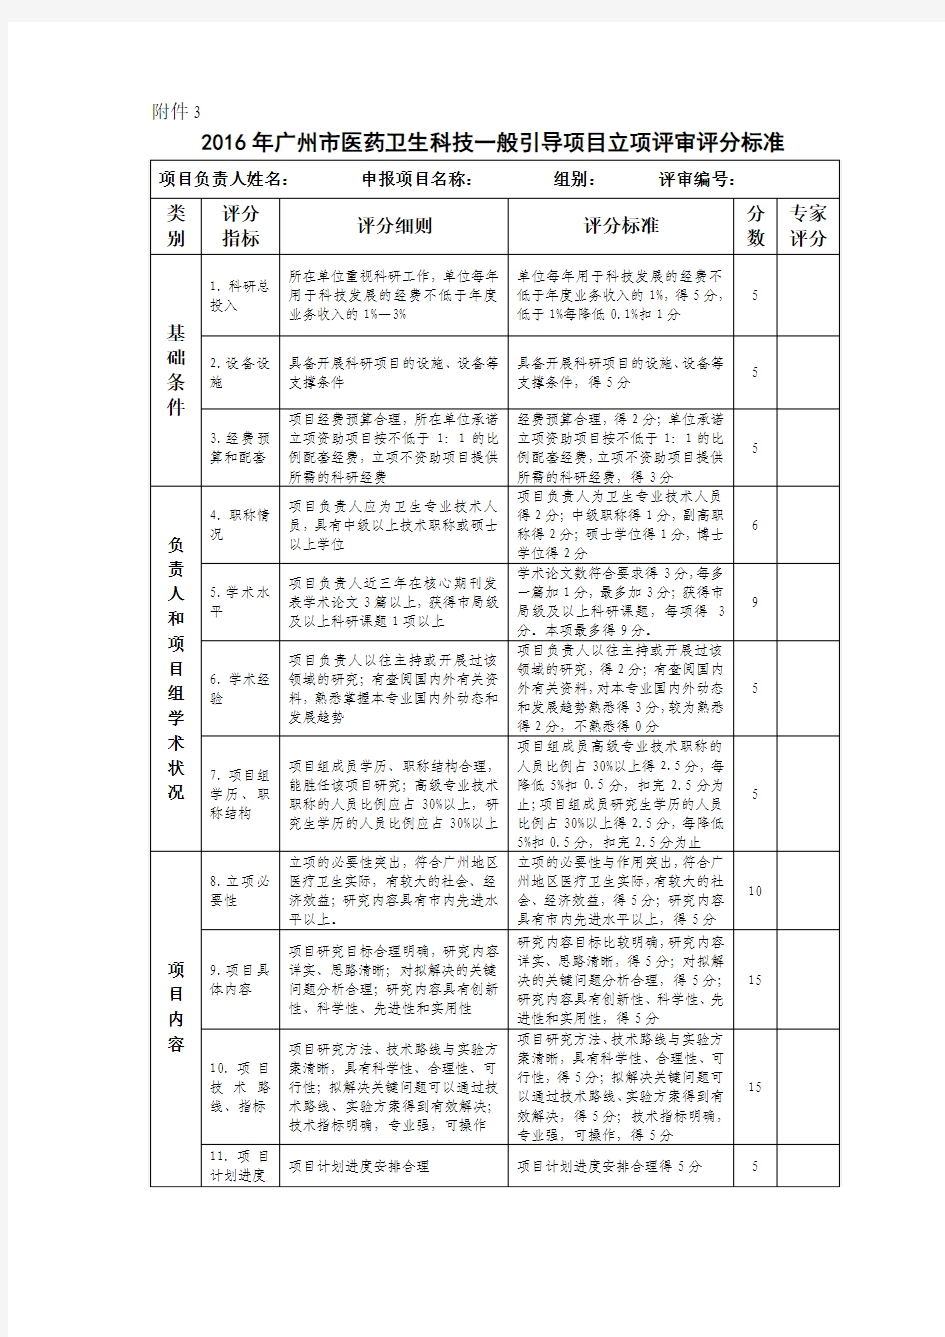 2016年广州市医药卫生科技一般引导项目立项评审专家评分表